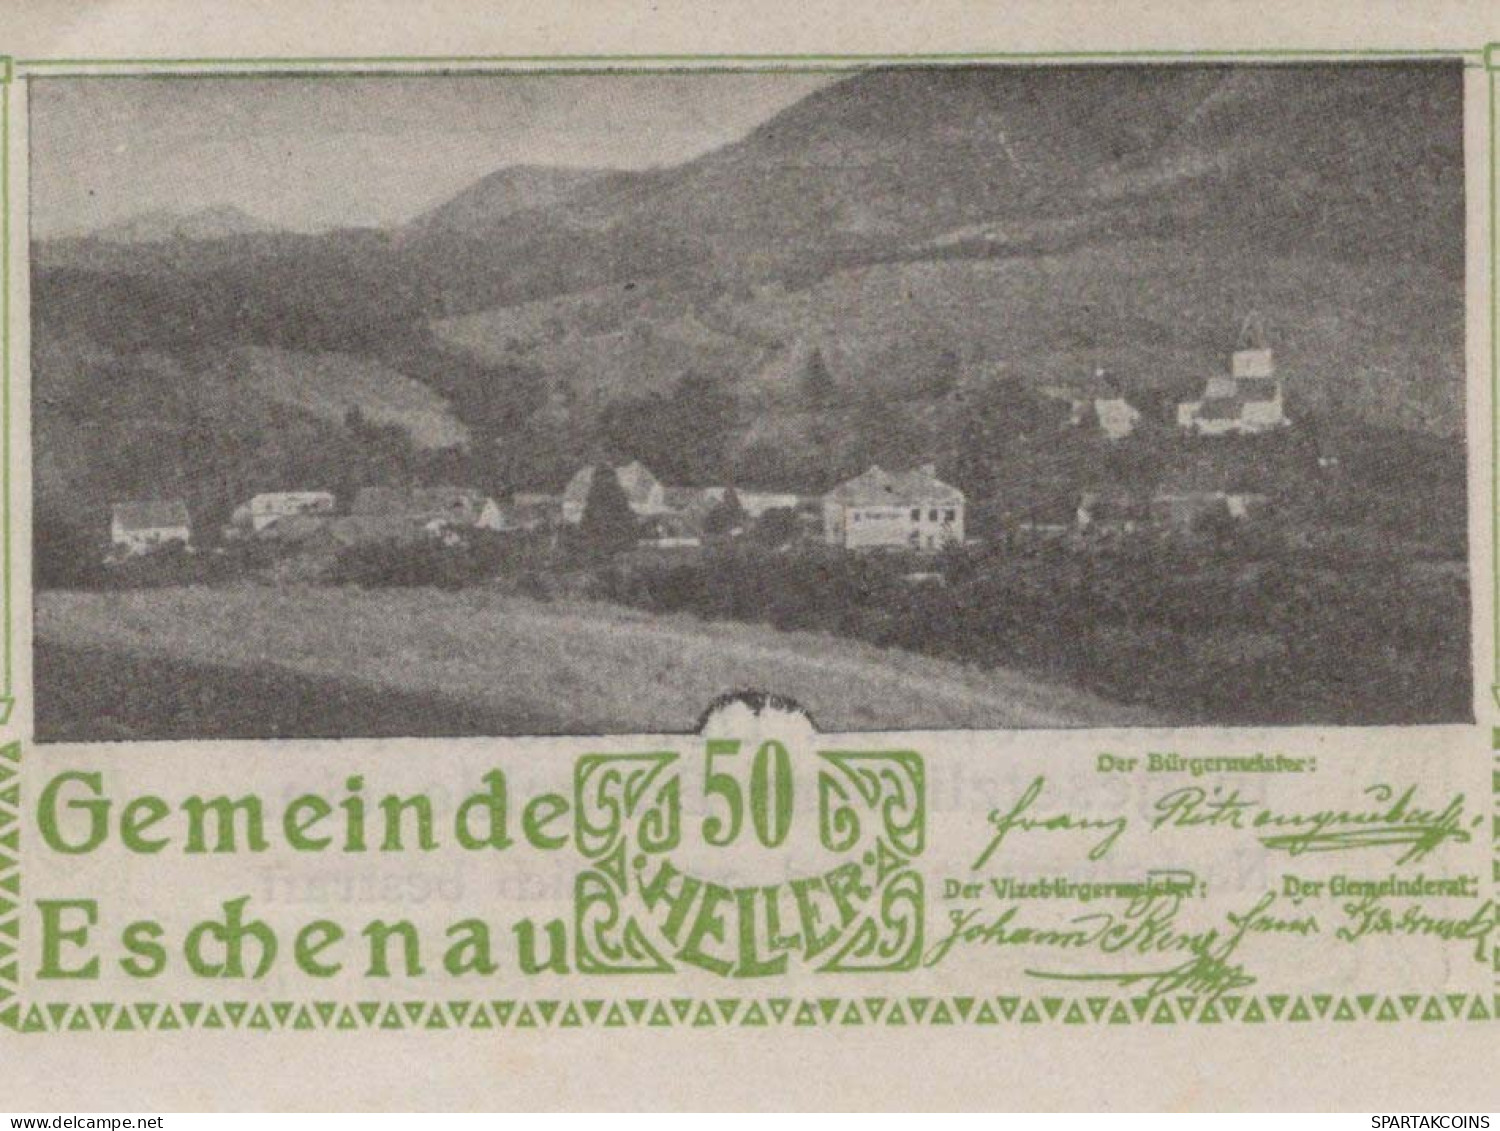 50 HELLER 1920 Stadt ESCHENAU Niedrigeren Österreich Notgeld Banknote #PF080 - [11] Local Banknote Issues